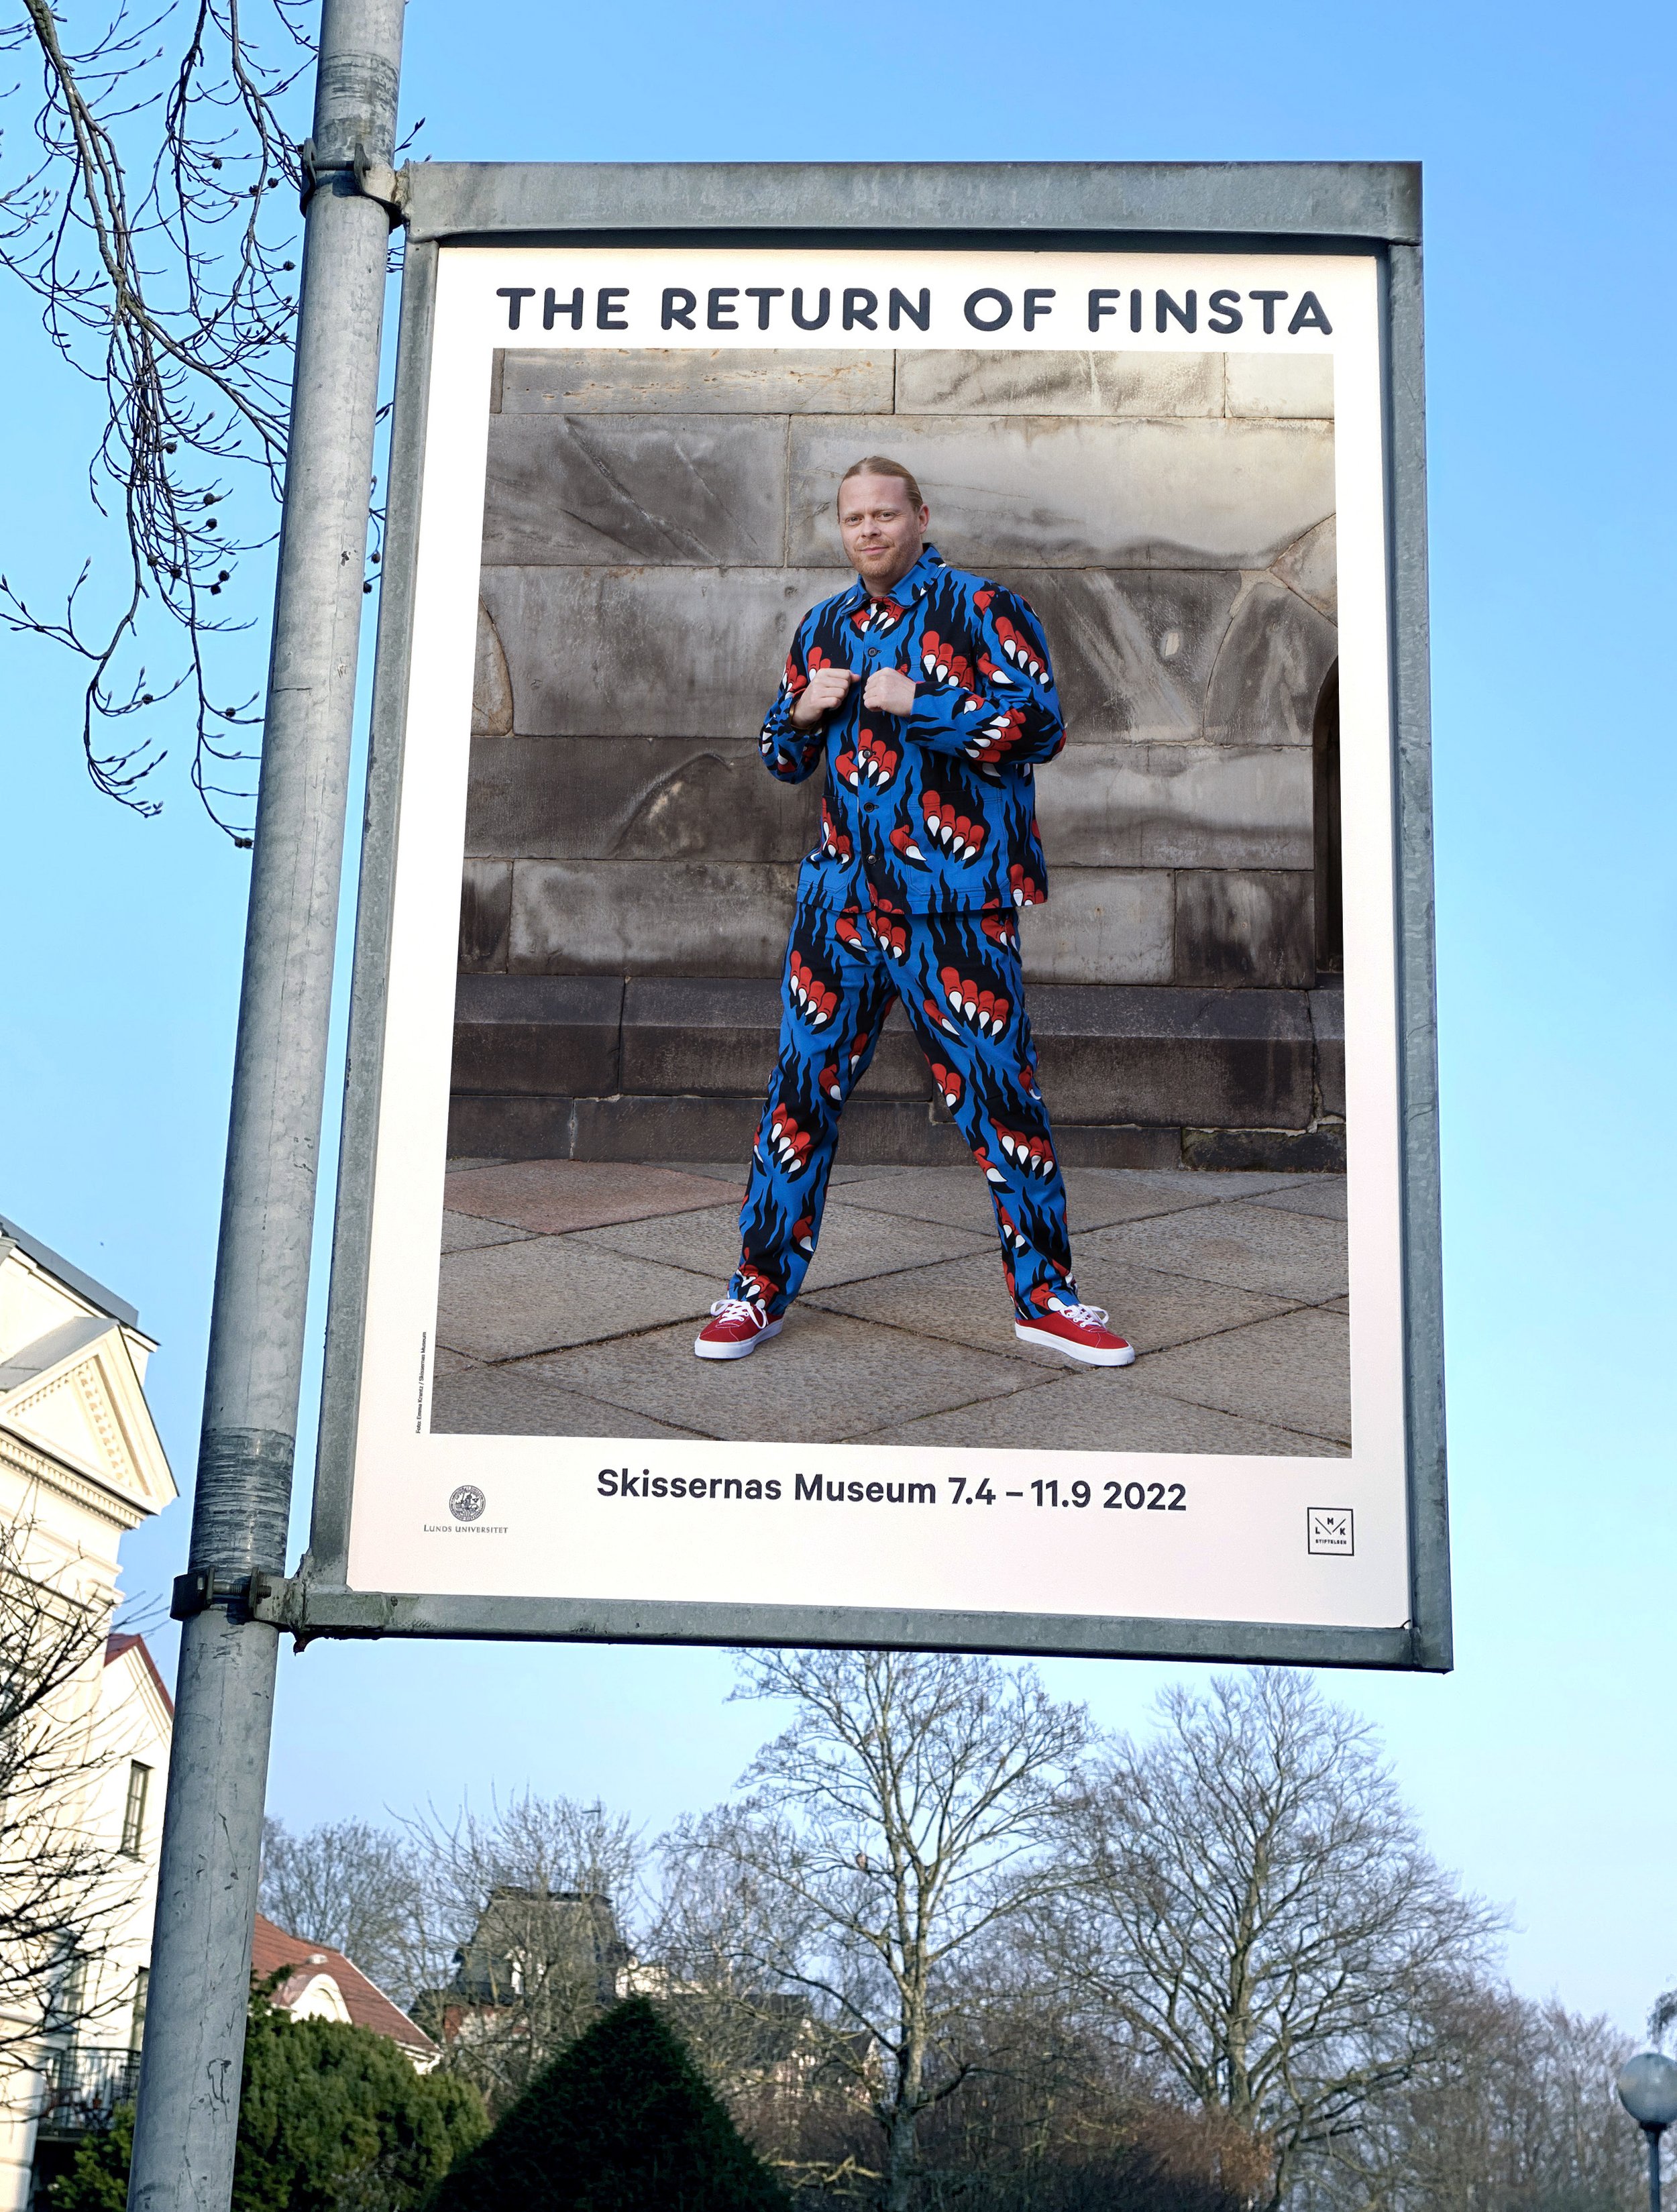 Skissernas Museum- The Return of Finsta 2022